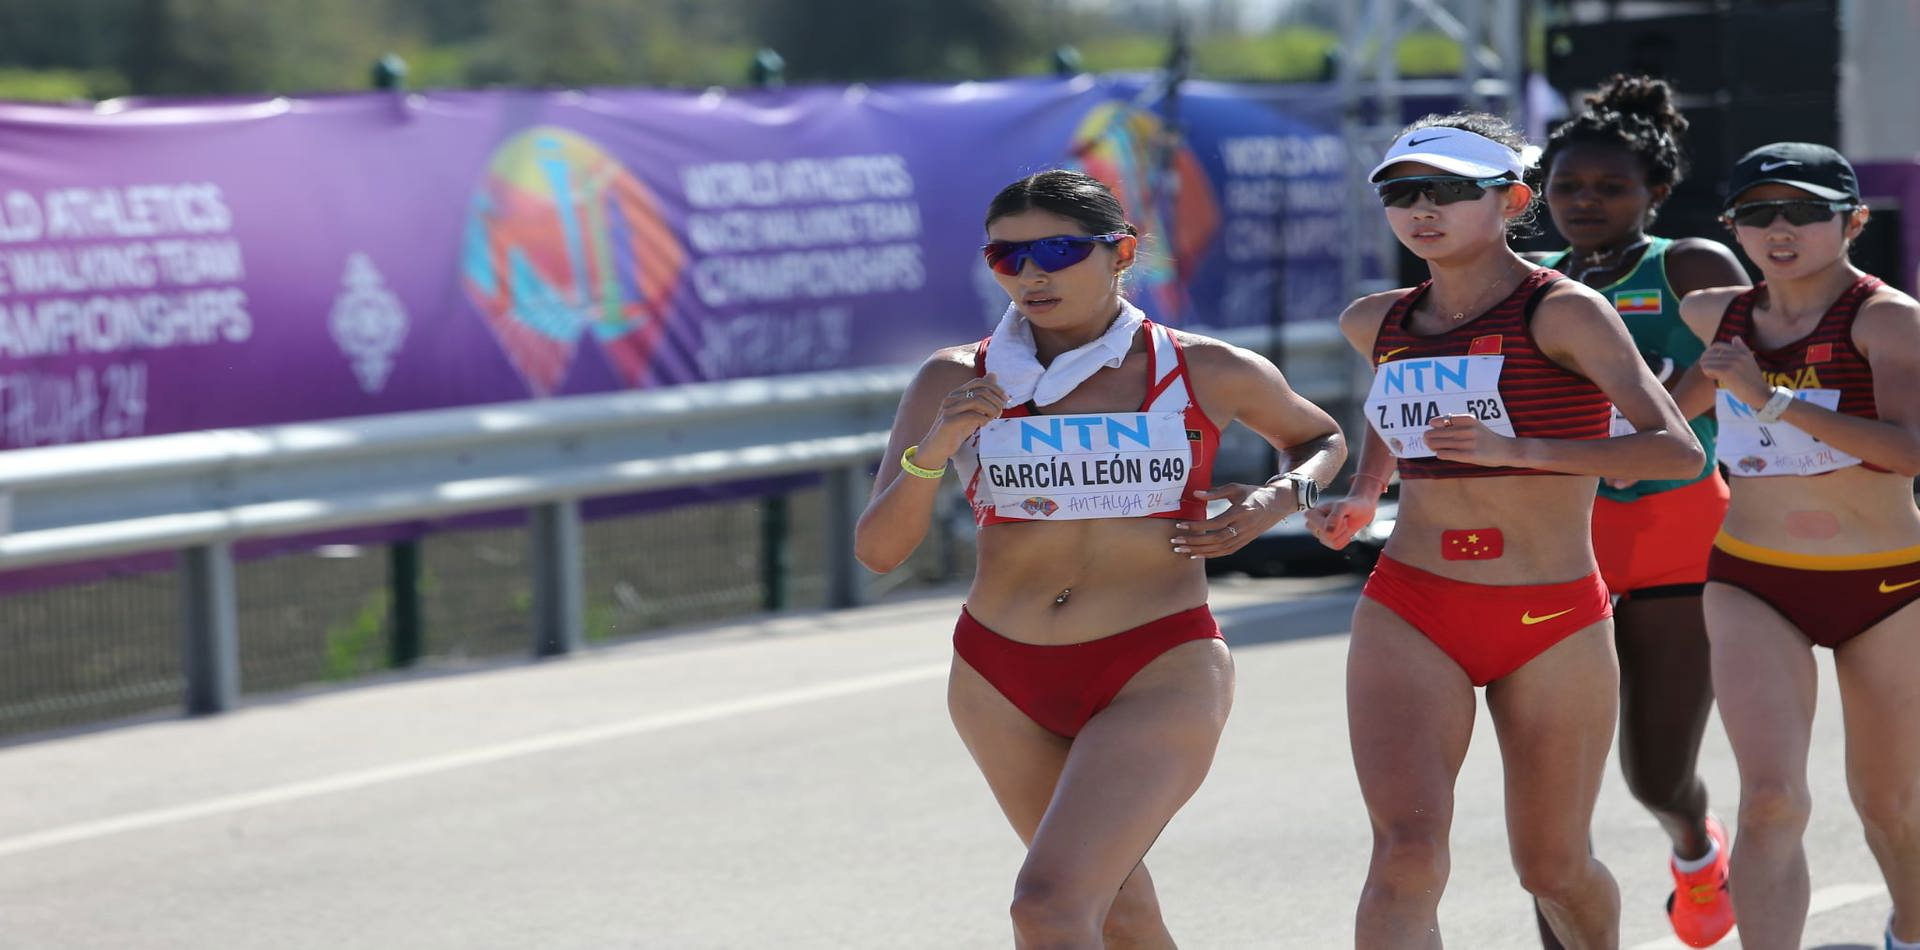 20 kilometre kadınlarda Perulu Kimberly Garcia Leon birinci oldu